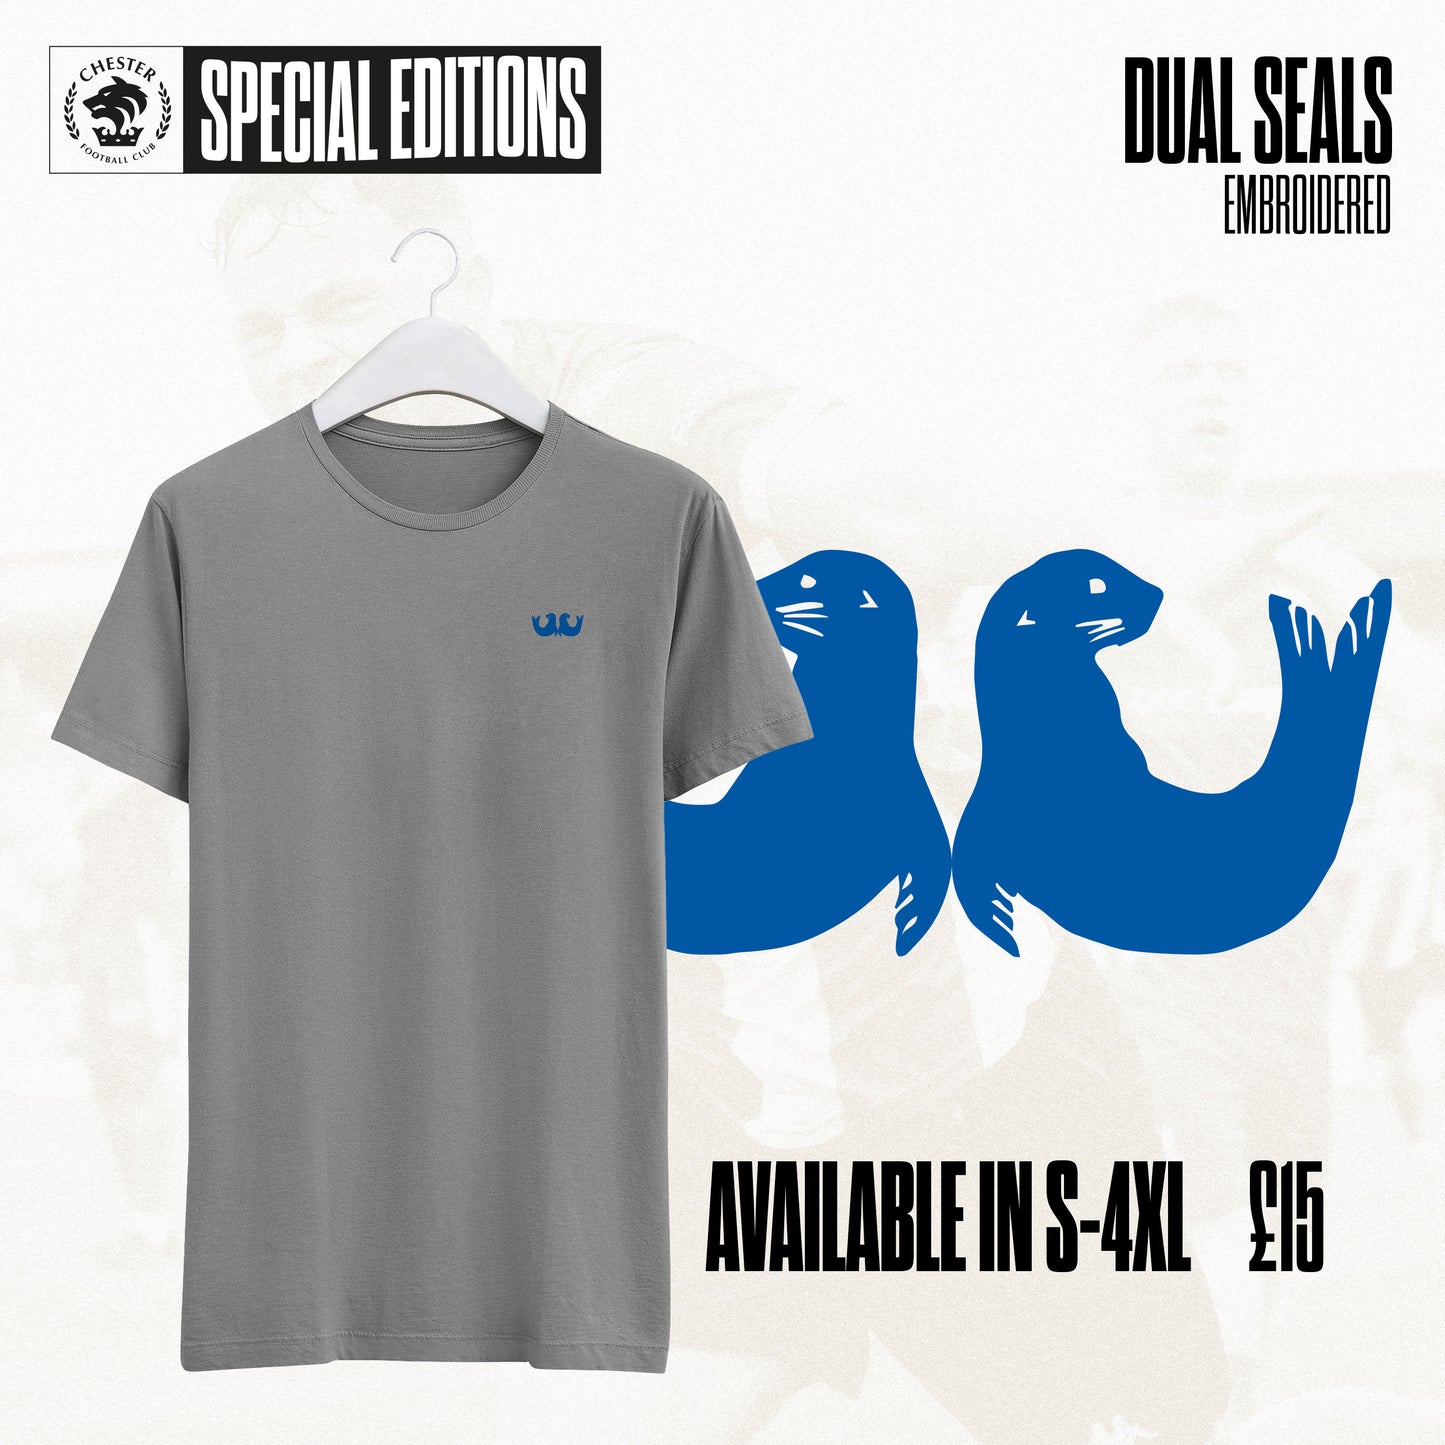 Dual Seals T-Shirt